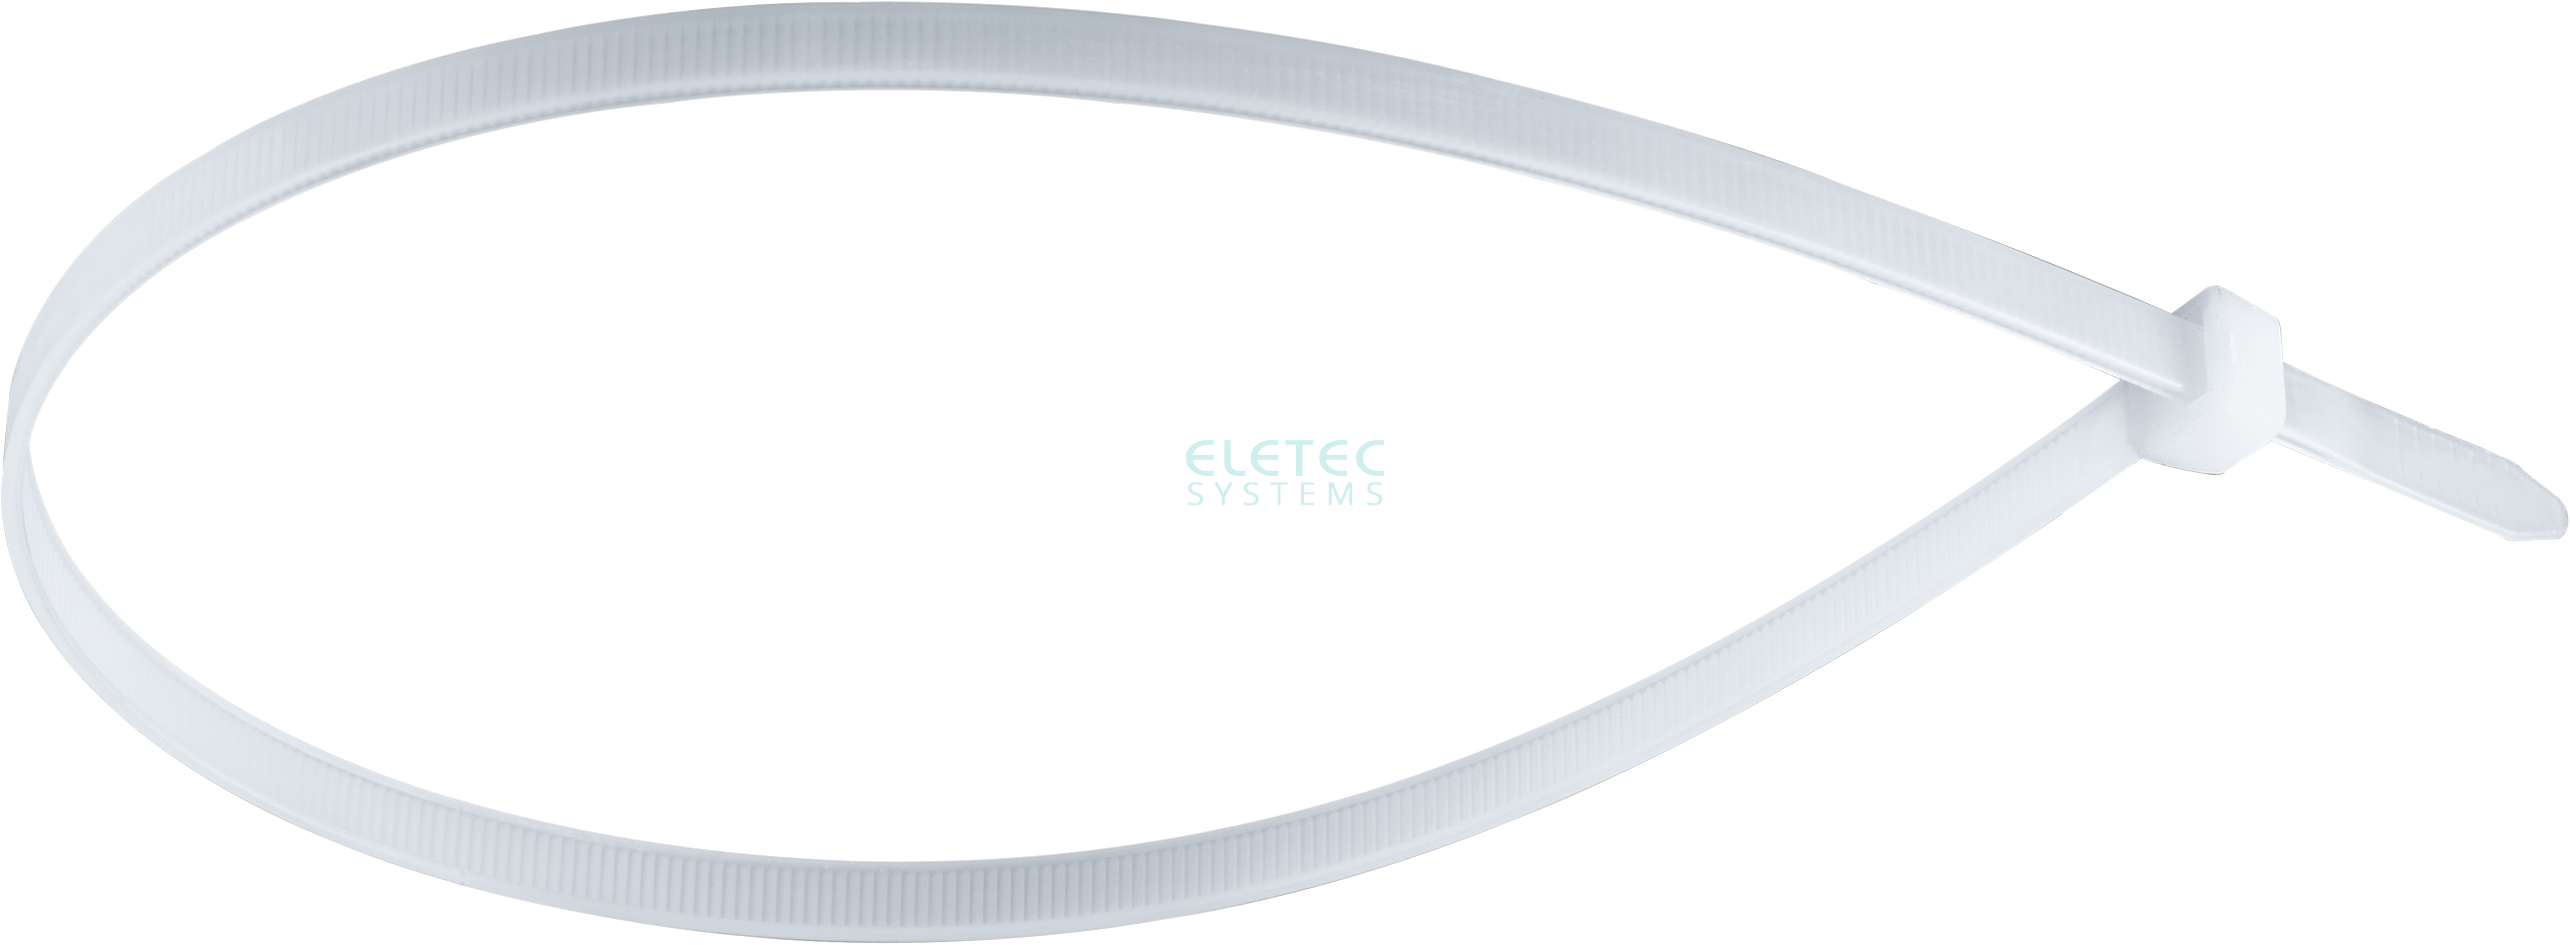 картинка Стяжка для кабеля 140х3,6 бесцветная (100 шт) Eletec Systems